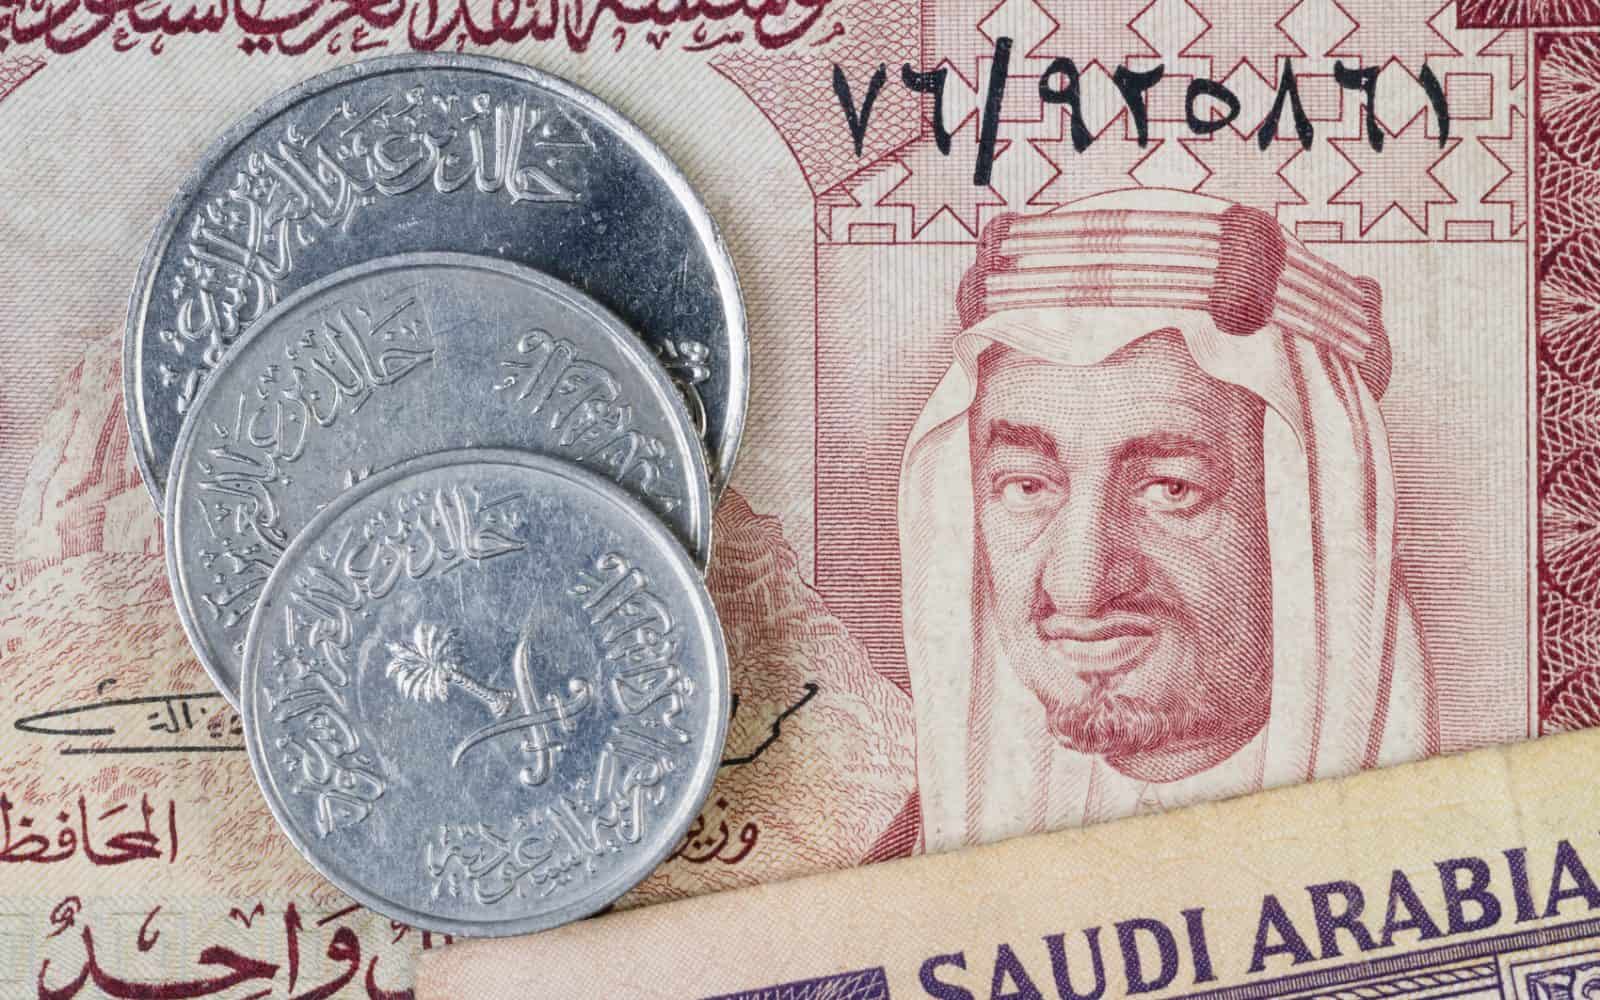 سعر الريال السعودي اليوم الاحد 3 يناير 2021 في البنوك المصرية المختلفة وفقا لتعاملات اليوم